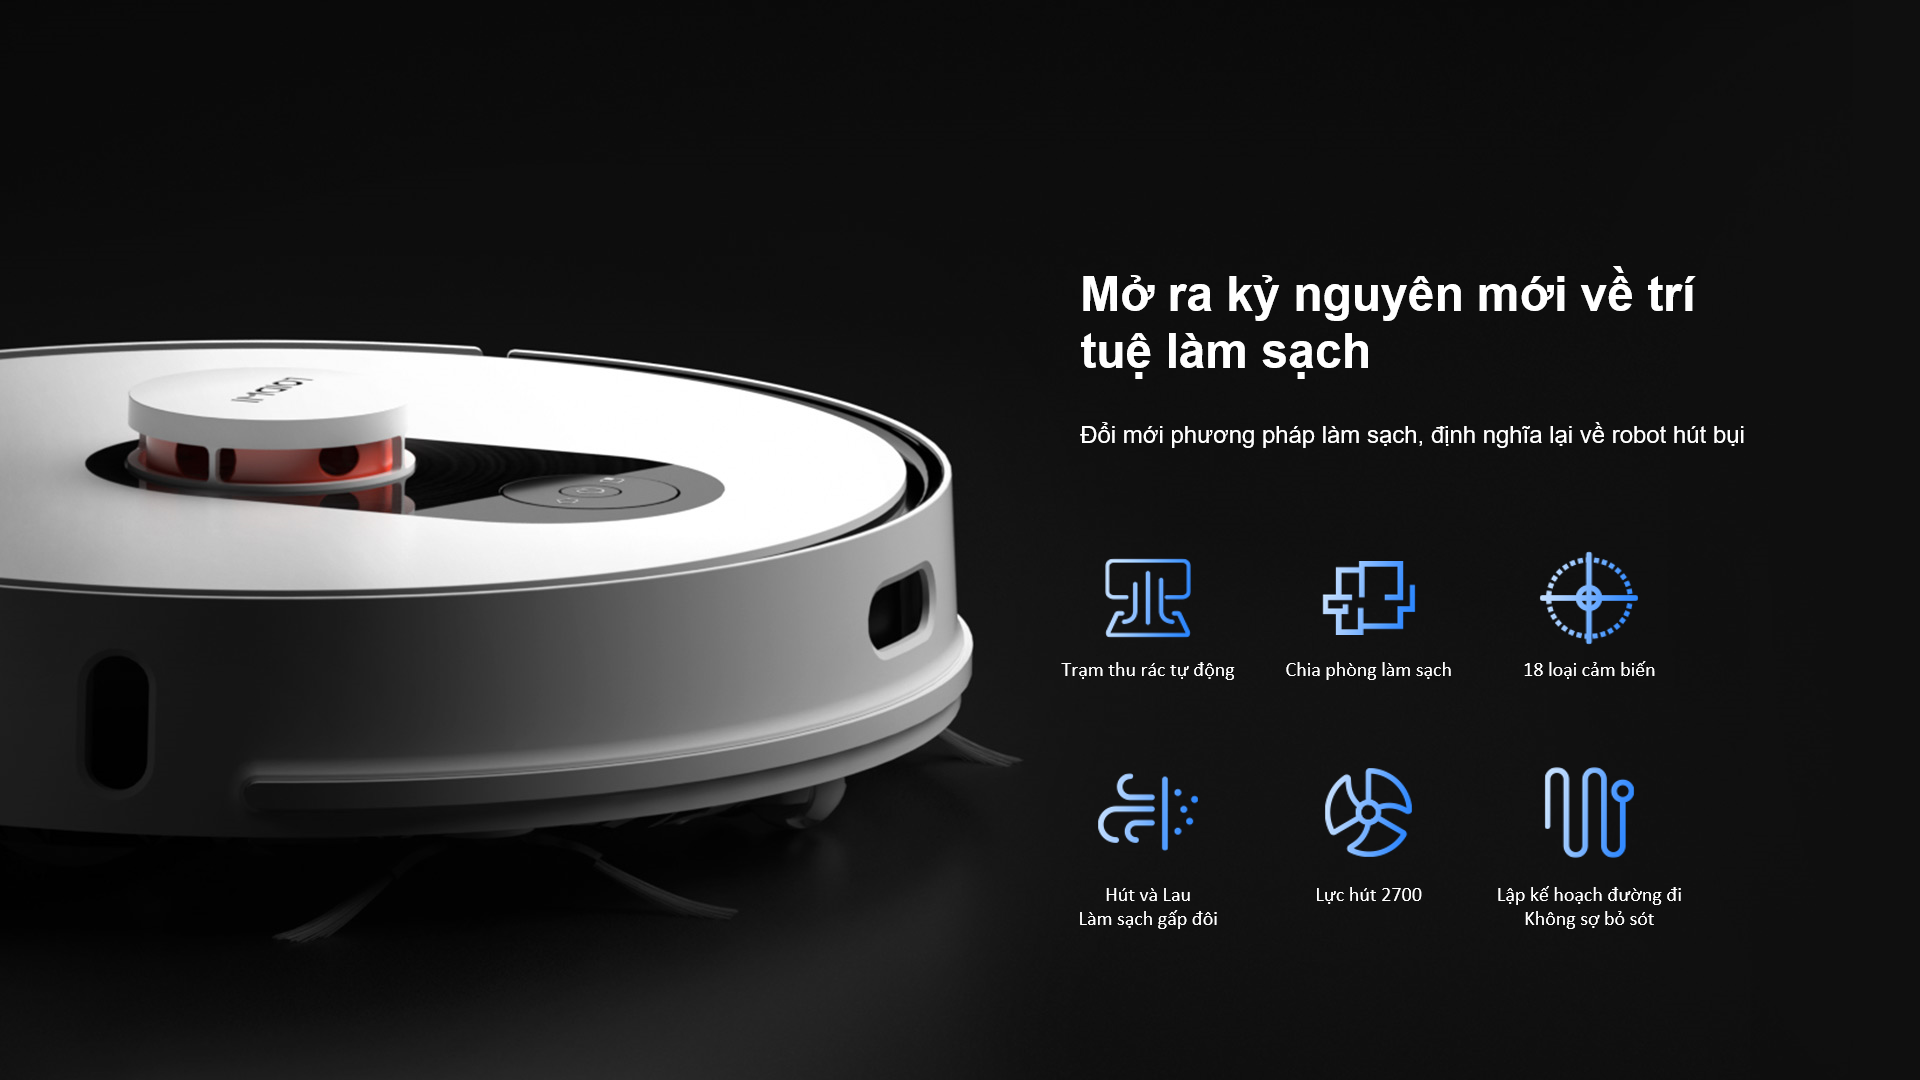 Robot Hút Bụi Xiaomi Roidmi Eve Plus sản phẩm được trao tặng danh hiệu “Trạm thu gom bụi thông minh thế hệ mới"